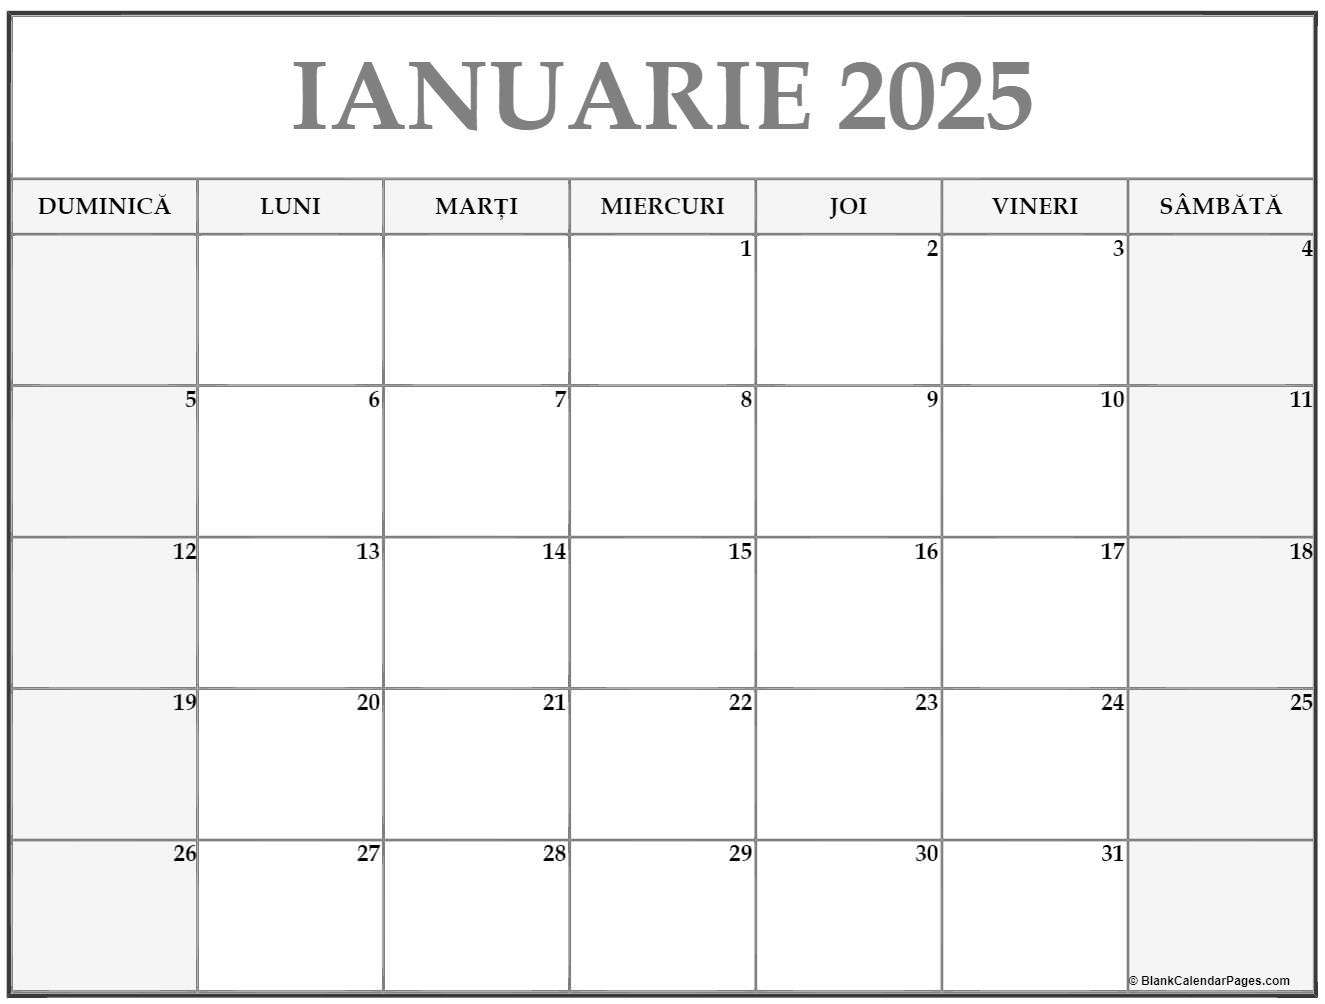 Calendarul ianuarie 2025 imprimabil gratuit in romana